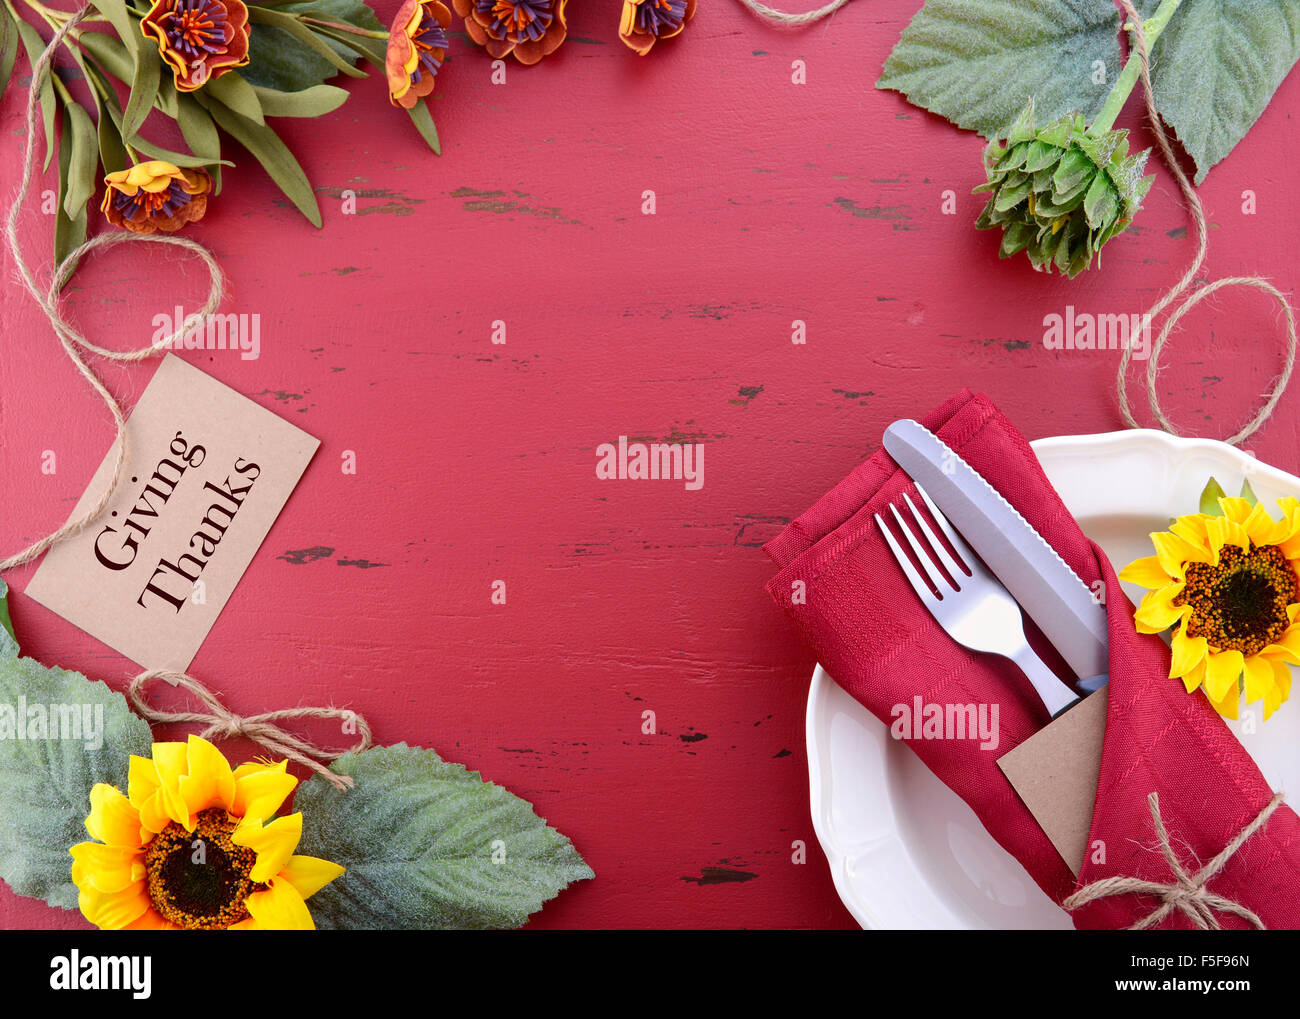 Felice ringraziamento su sfondo rosso rustico tavolo in legno decorate con le frontiere. Foto Stock